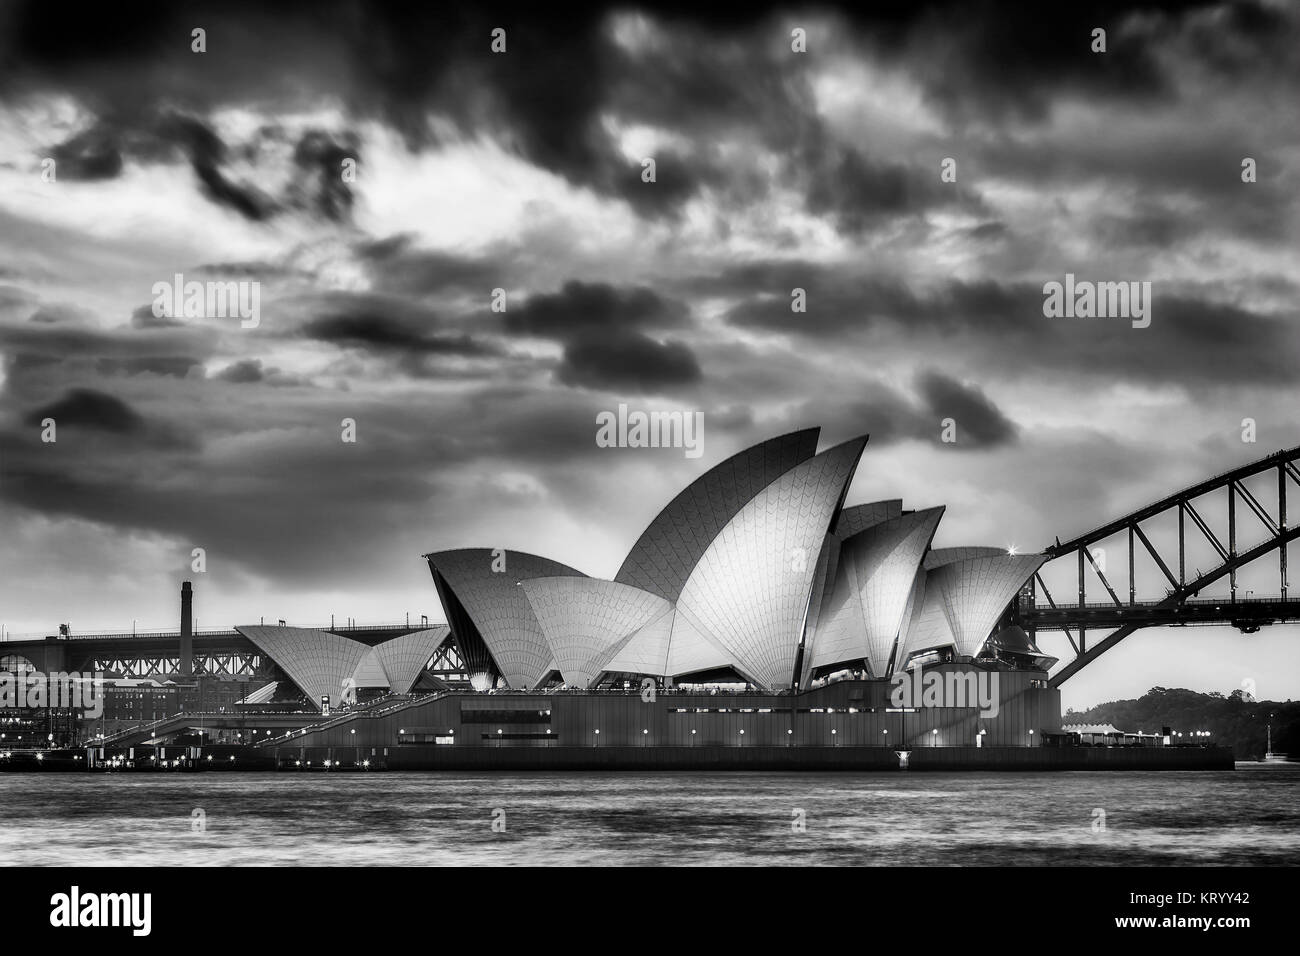 Sydney, Australien - 19. März 2017: magischen Sonnenuntergang über Wahrzeichen - Sydney Opera House und die Harbour Bridge. Seite Blick auf das beleuchtete Oper i Stockfoto